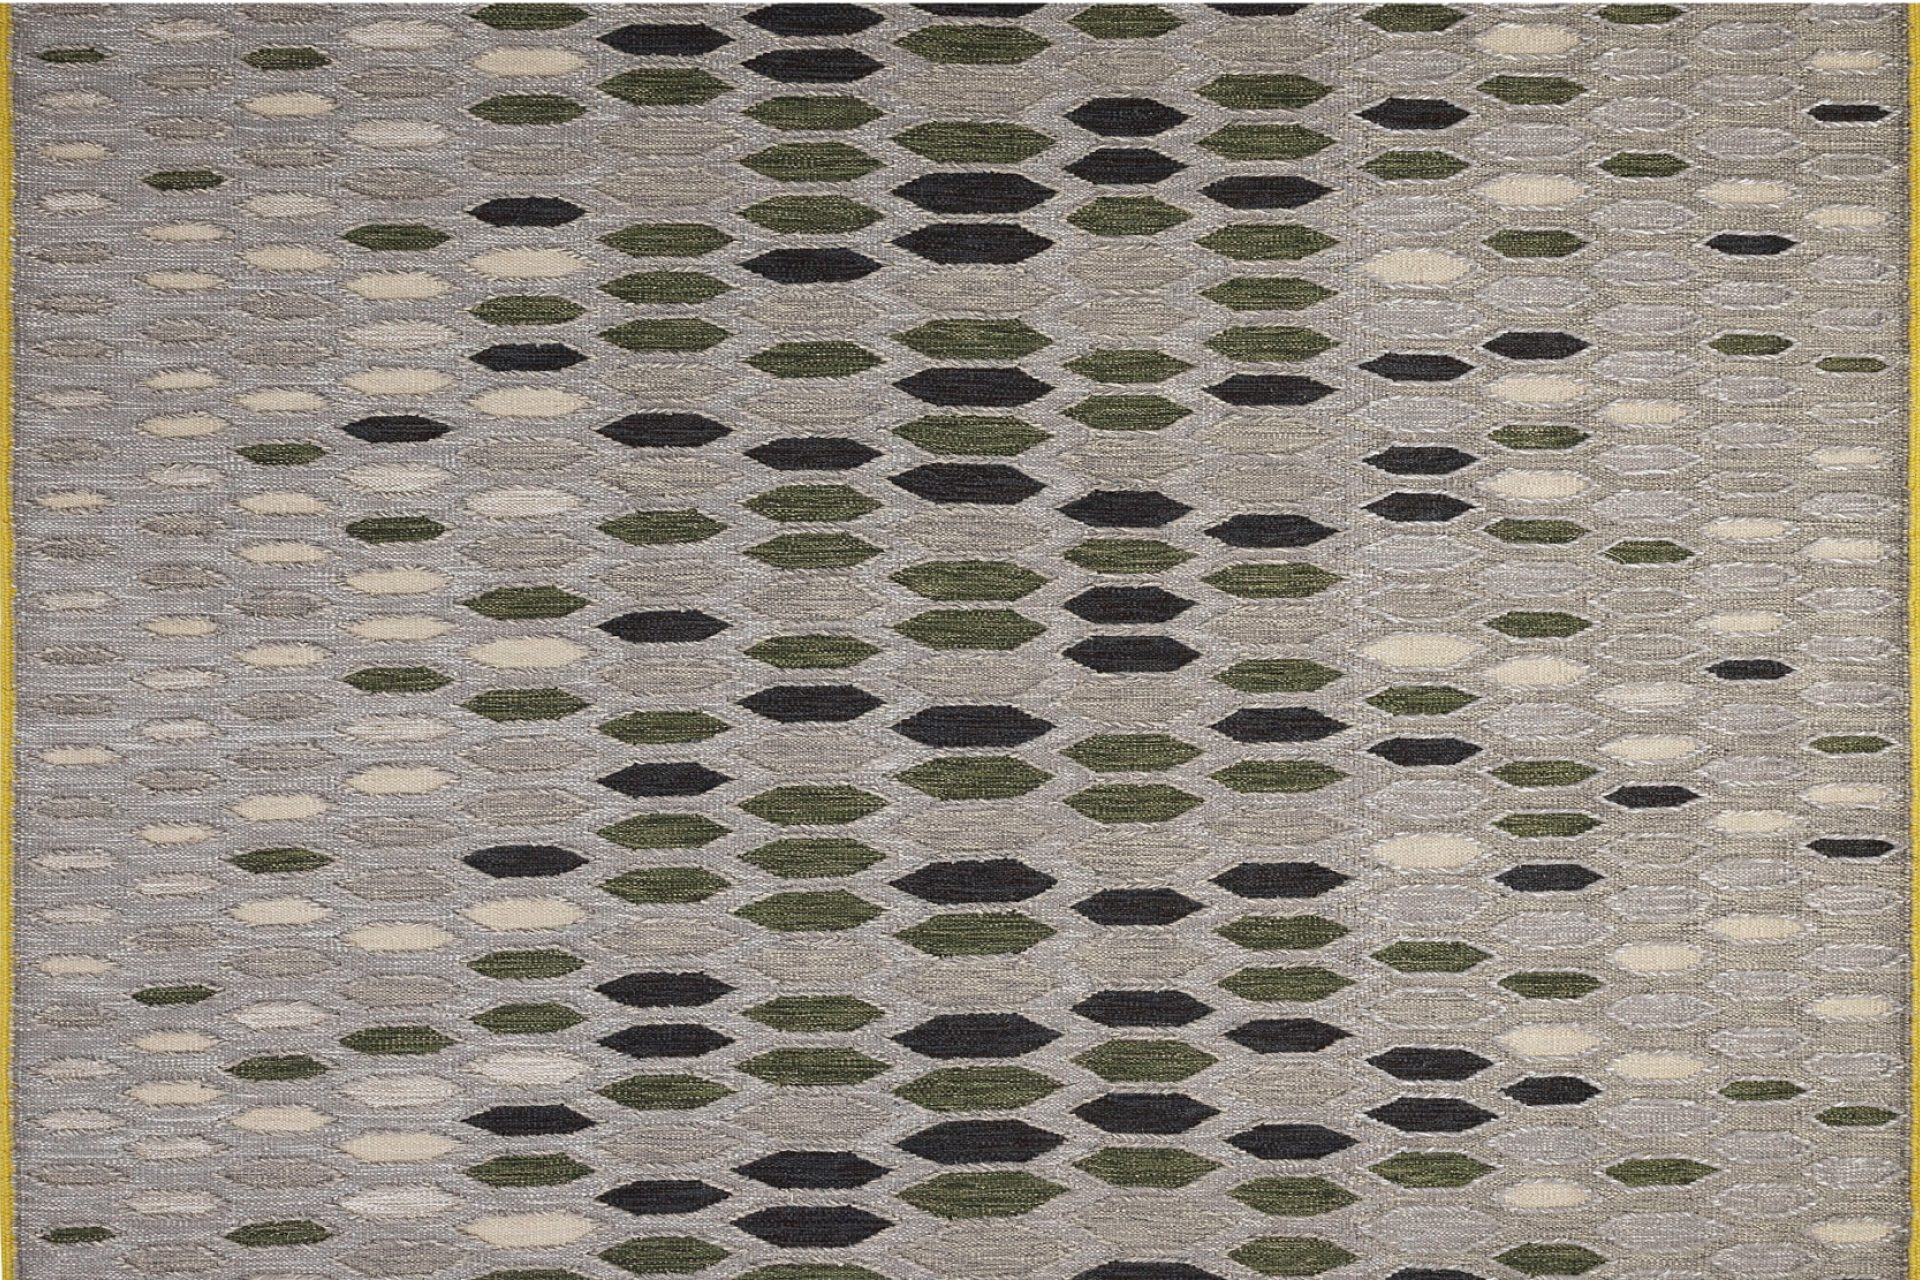 Vue sur une partie de tapis avec des losange de tons beige, vert et gris